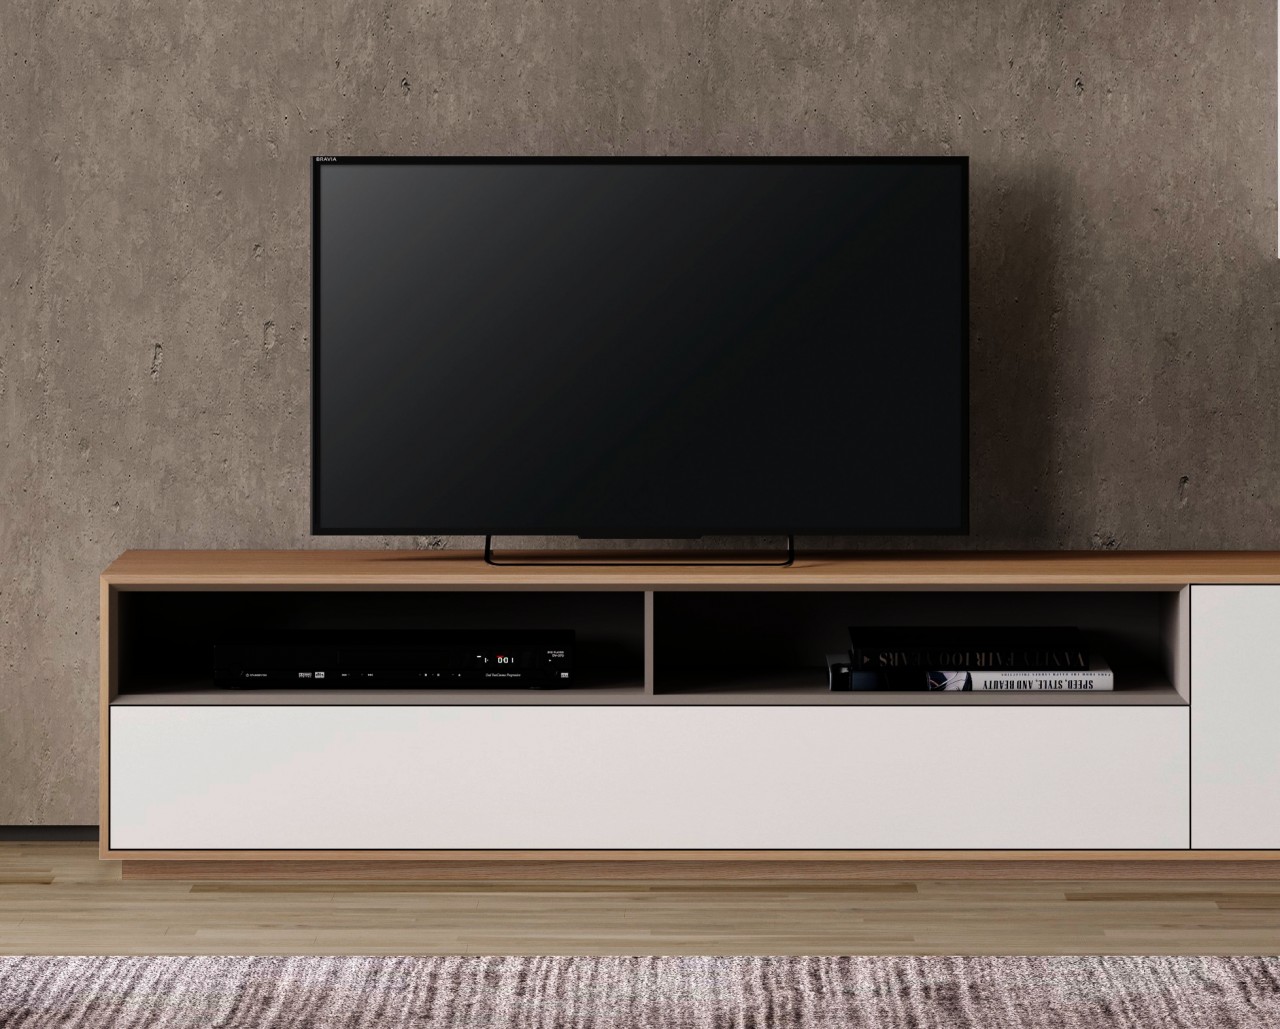 Tudo que você precisa para a sua TV em um só lugar com a estante TV Enkel modernidade, funcionalidade  com  design excecional.